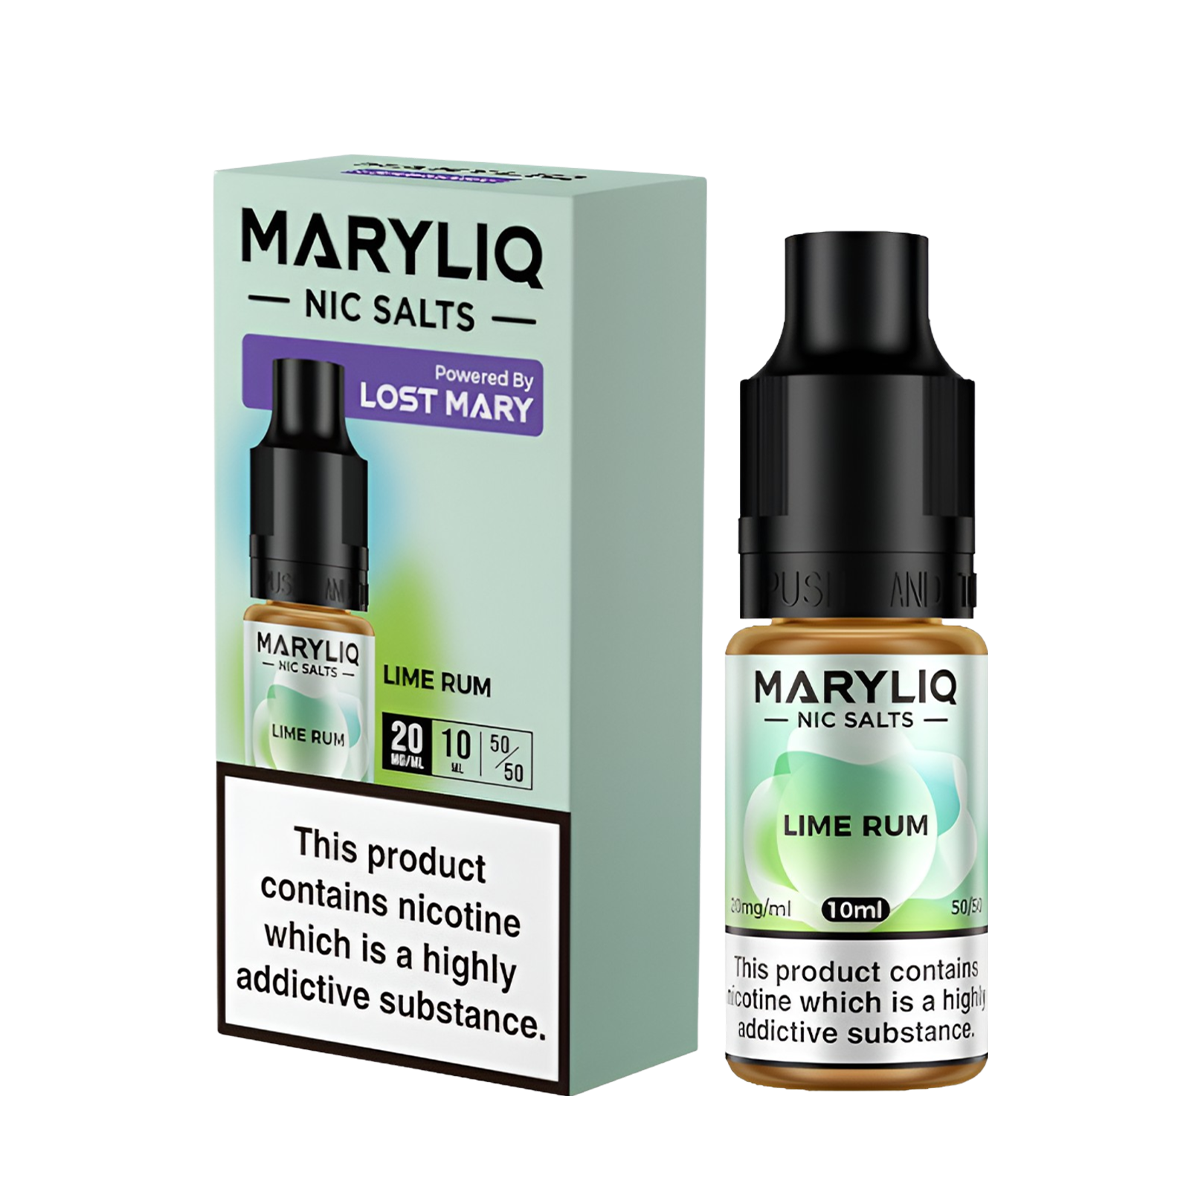 Lost Mary Maryliq Salt Nicotine Vape Juice 20 Mg 10 Ml Lime Rum